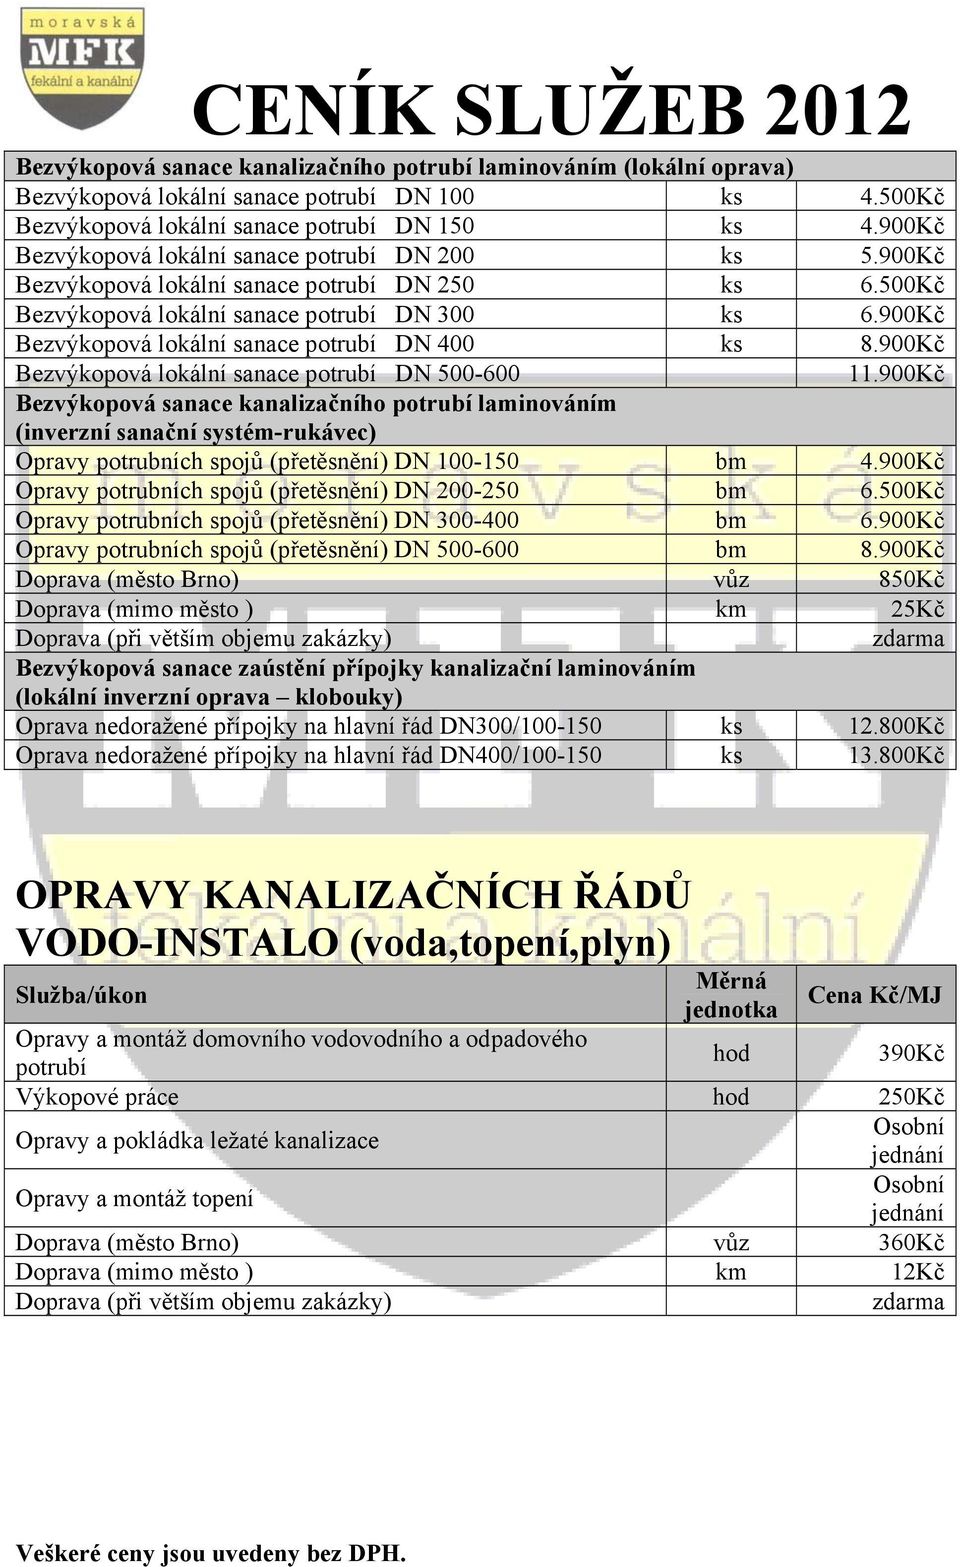 900Kč Bezvýkopová lokální sanace potrubí DN 400 ks 8.900Kč Bezvýkopová lokální sanace potrubí DN 500-600 11.